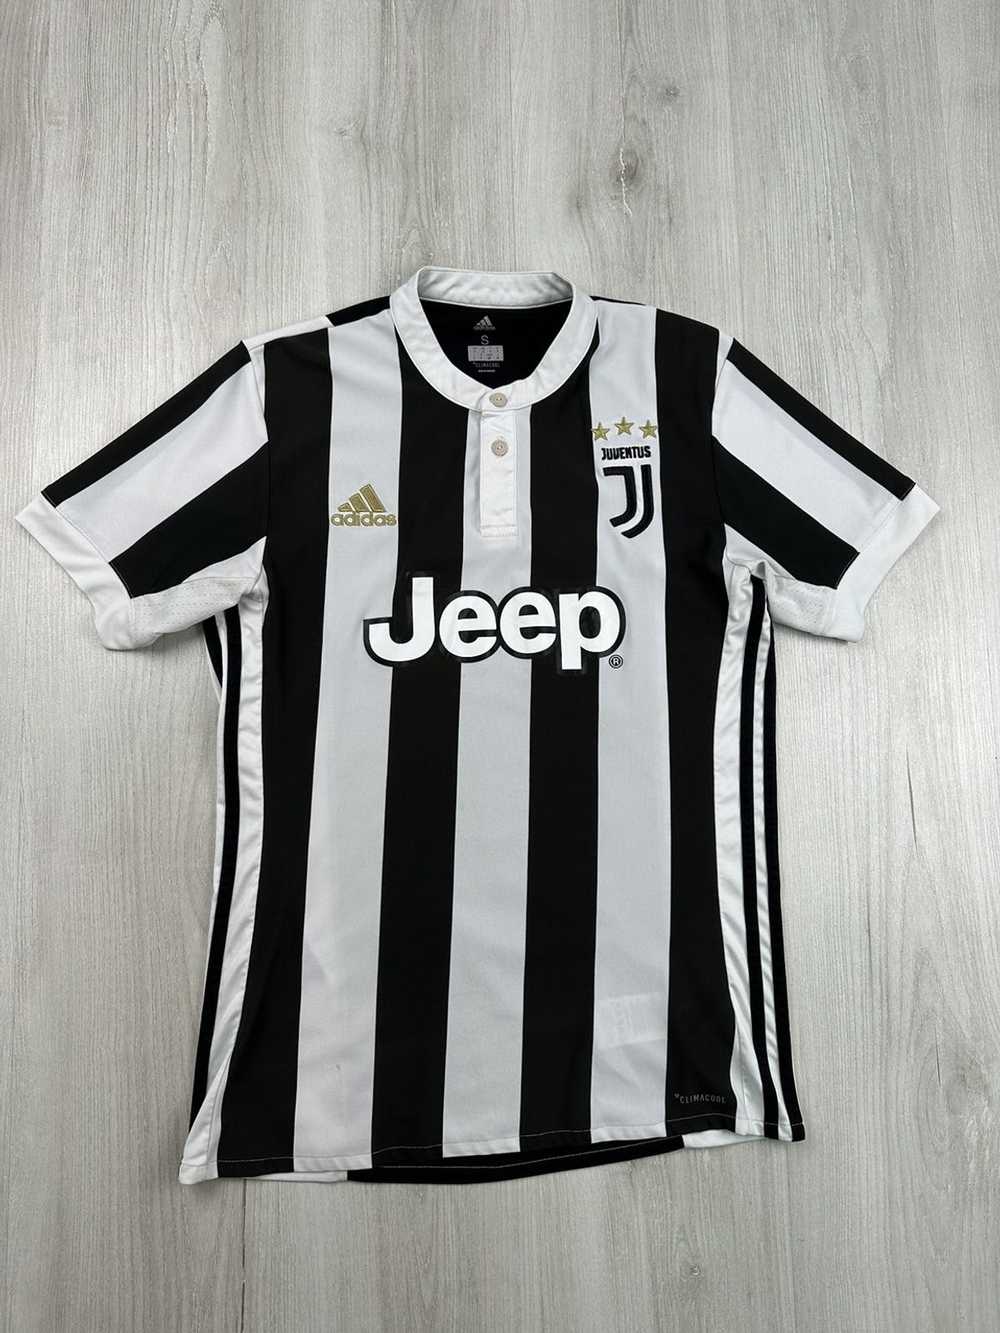 Adidas × Soccer Jersey × Streetwear Juventus 2017… - image 1